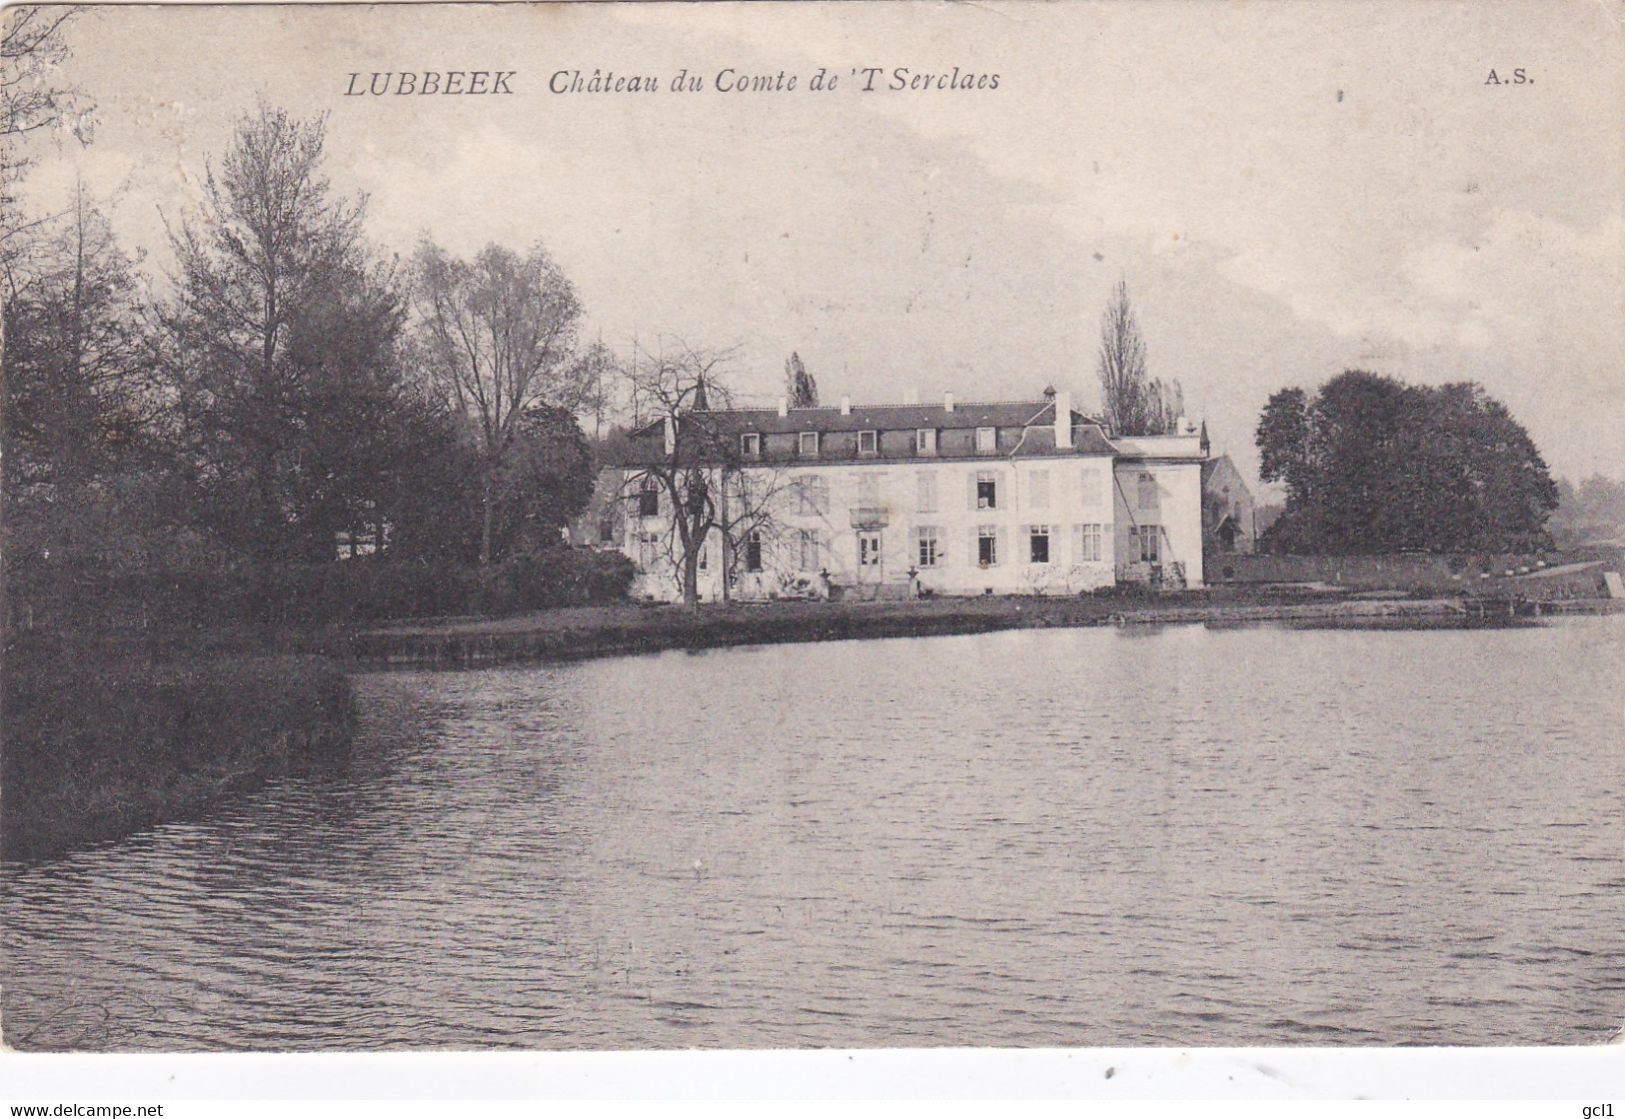 Lubbeek - Chateau De Comte De 't Serclaes - Lubbeek